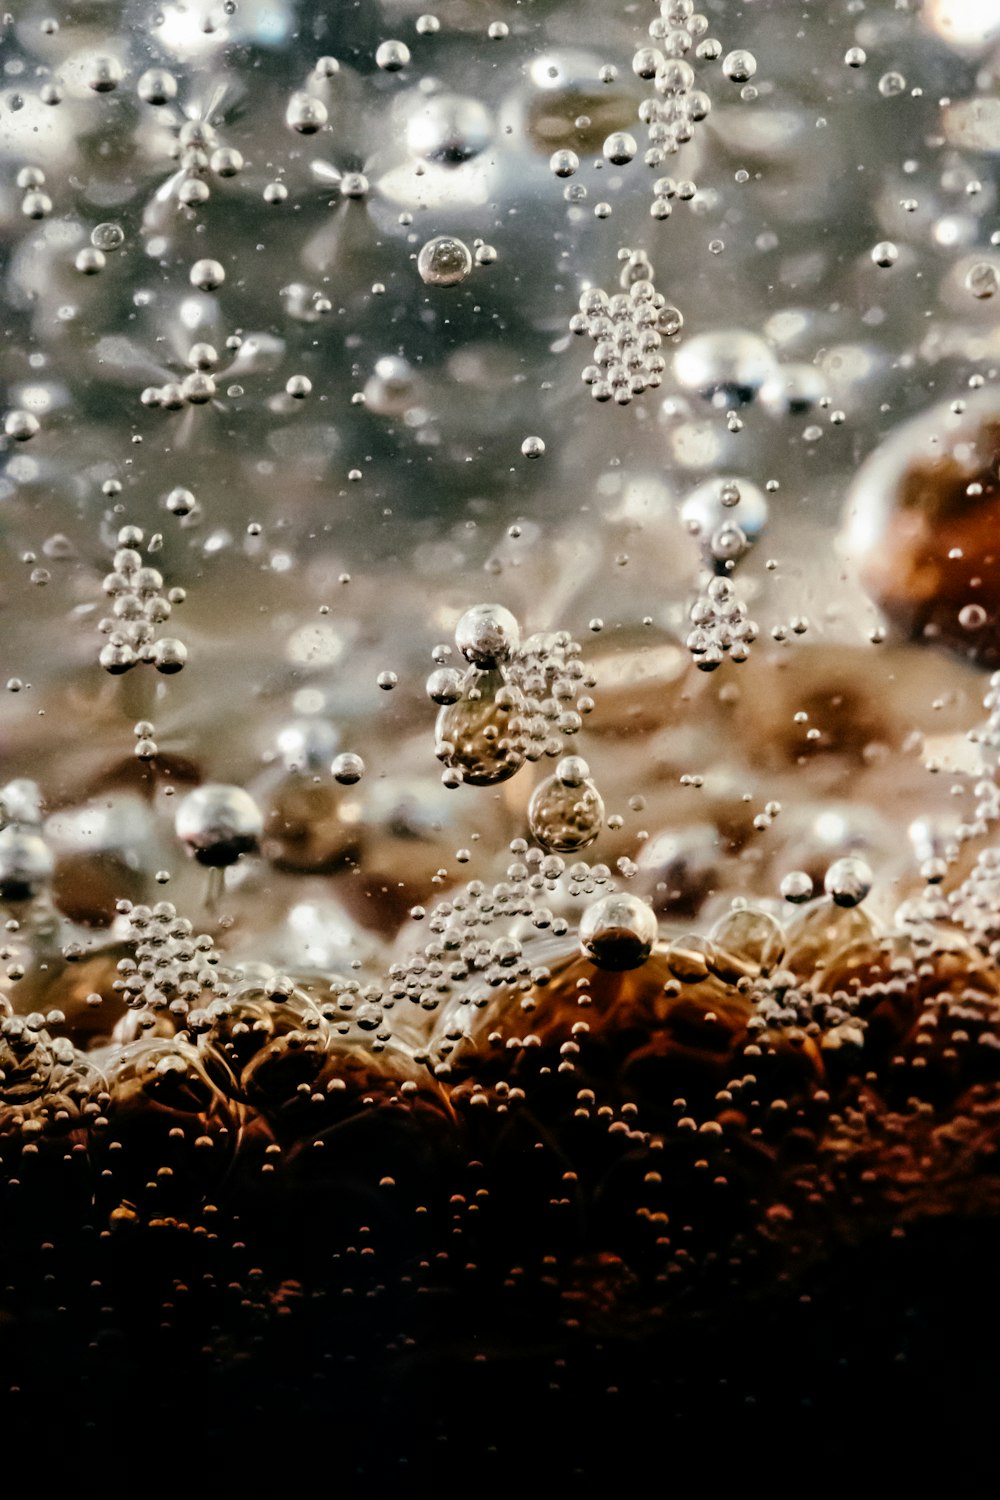 um close up de bolhas de água em uma superfície